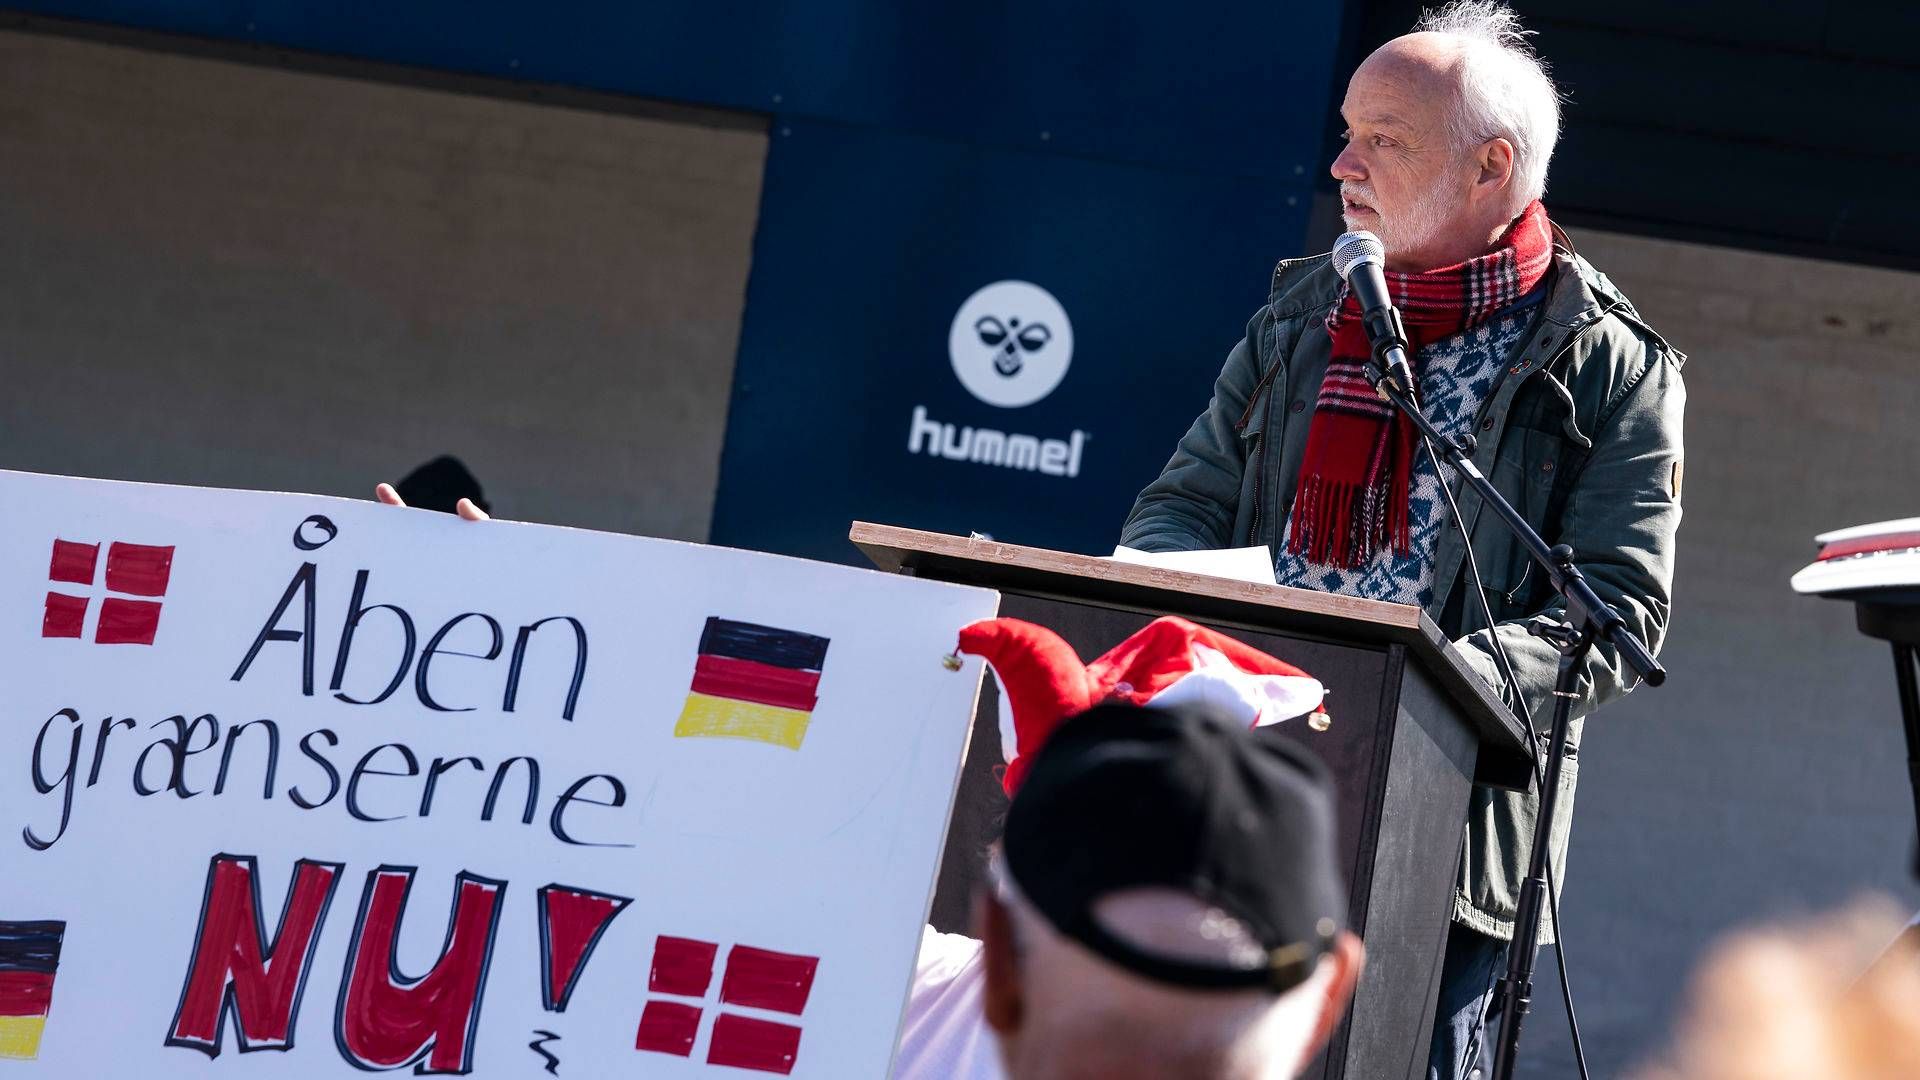 Den danske regering har endnu ikke besluttet, hvornår den vil åbne grænserne igen. I Tyskland kan det ske om mindre end en måned. | Foto: Claus Fisker/Ritzau Scanpix